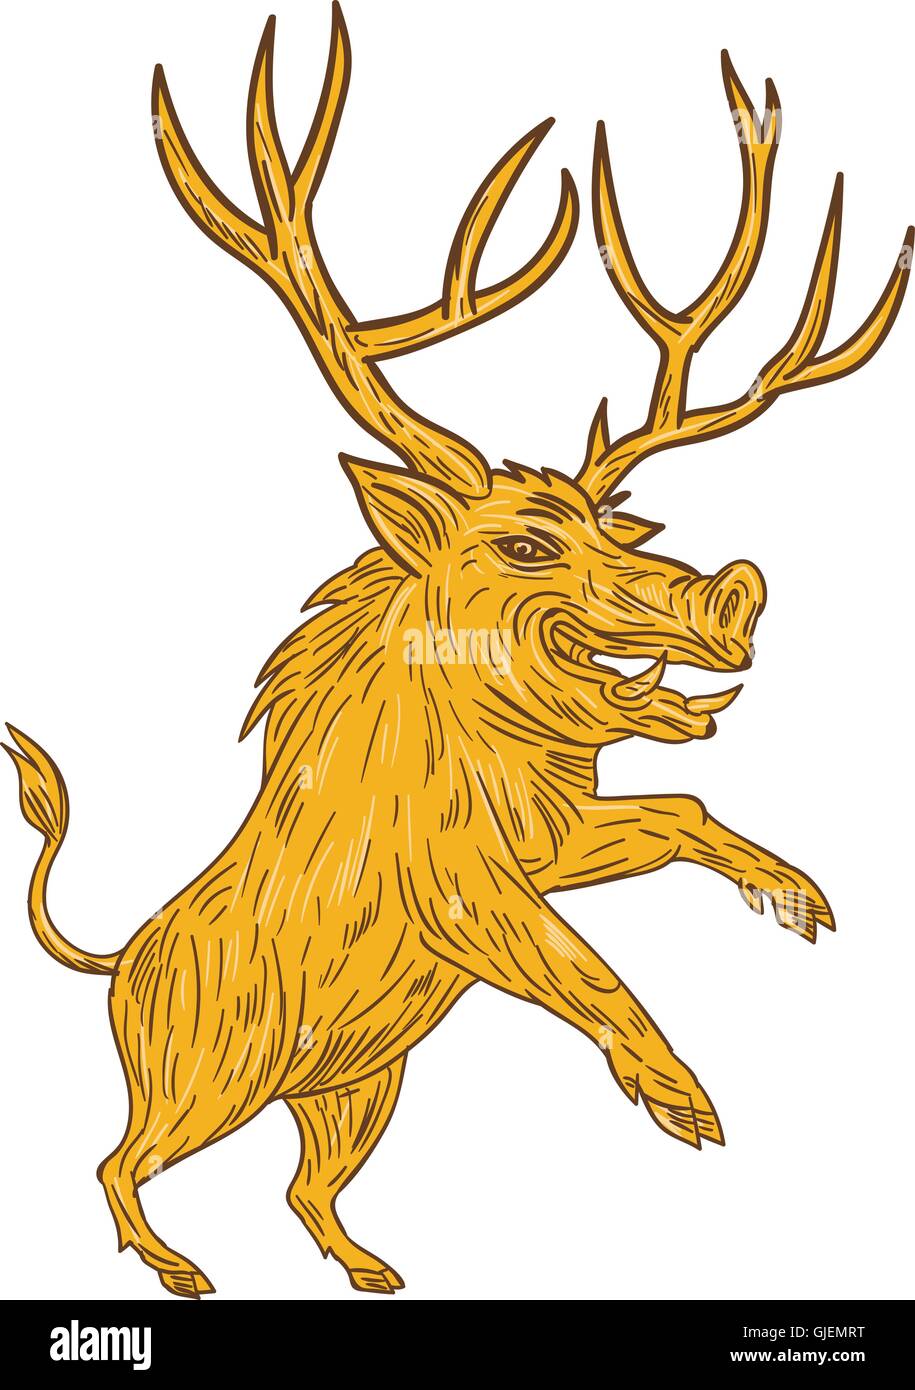 Disegno stile sketch illustrazione di un maiale selvatico cinghiale razorback con corna di cervo rampante visto dal lato impostato su bianco isolato Illustrazione Vettoriale